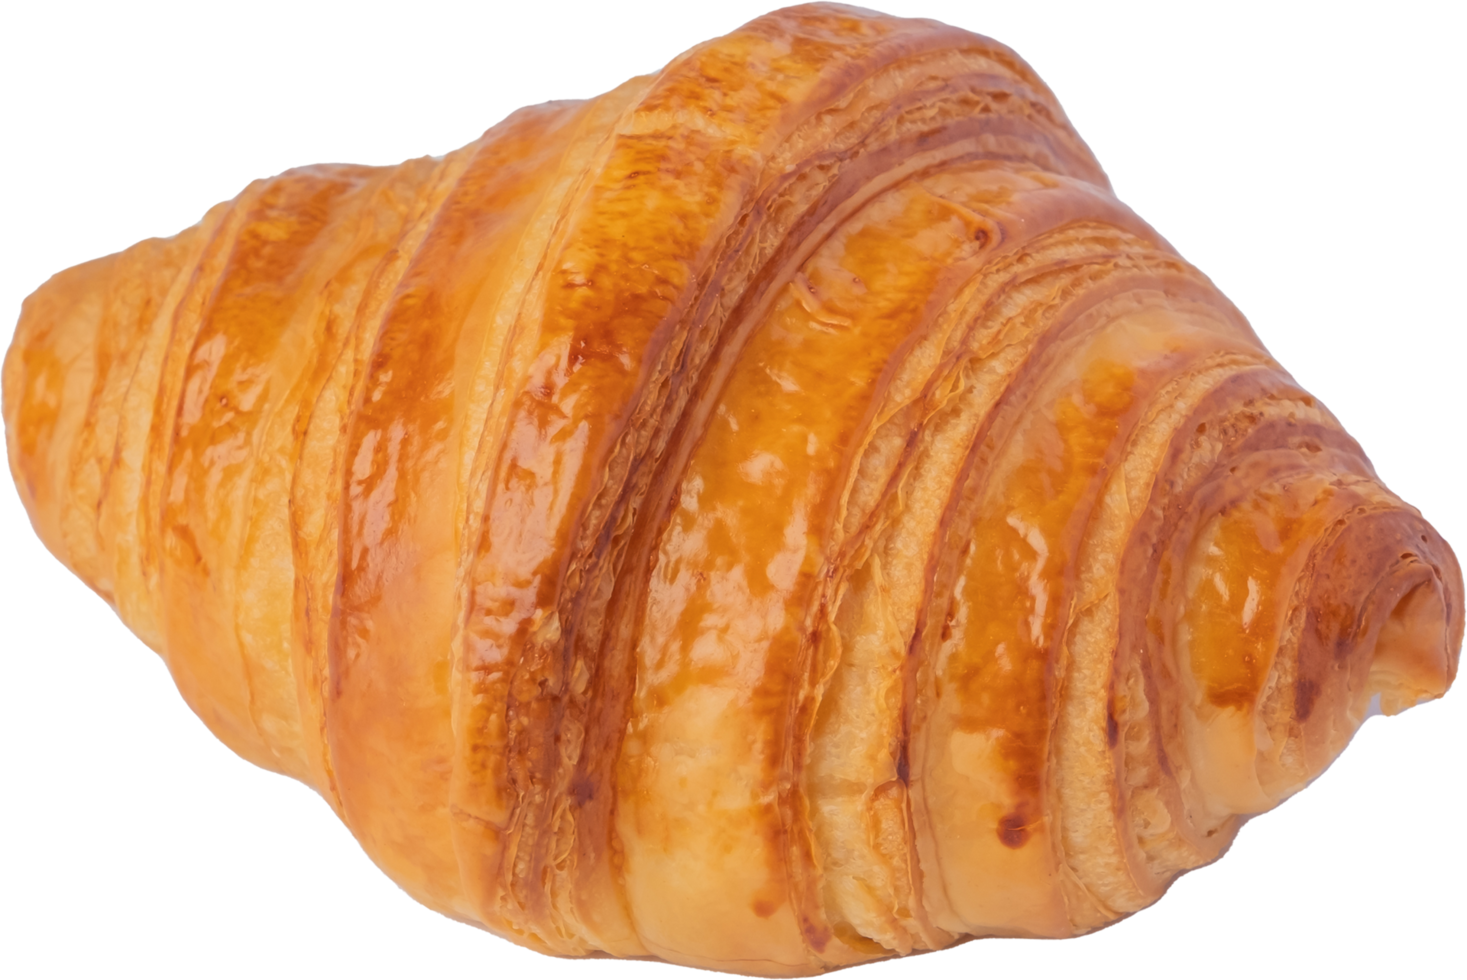 ritaglio di pane croissant su sfondo trasparente. png